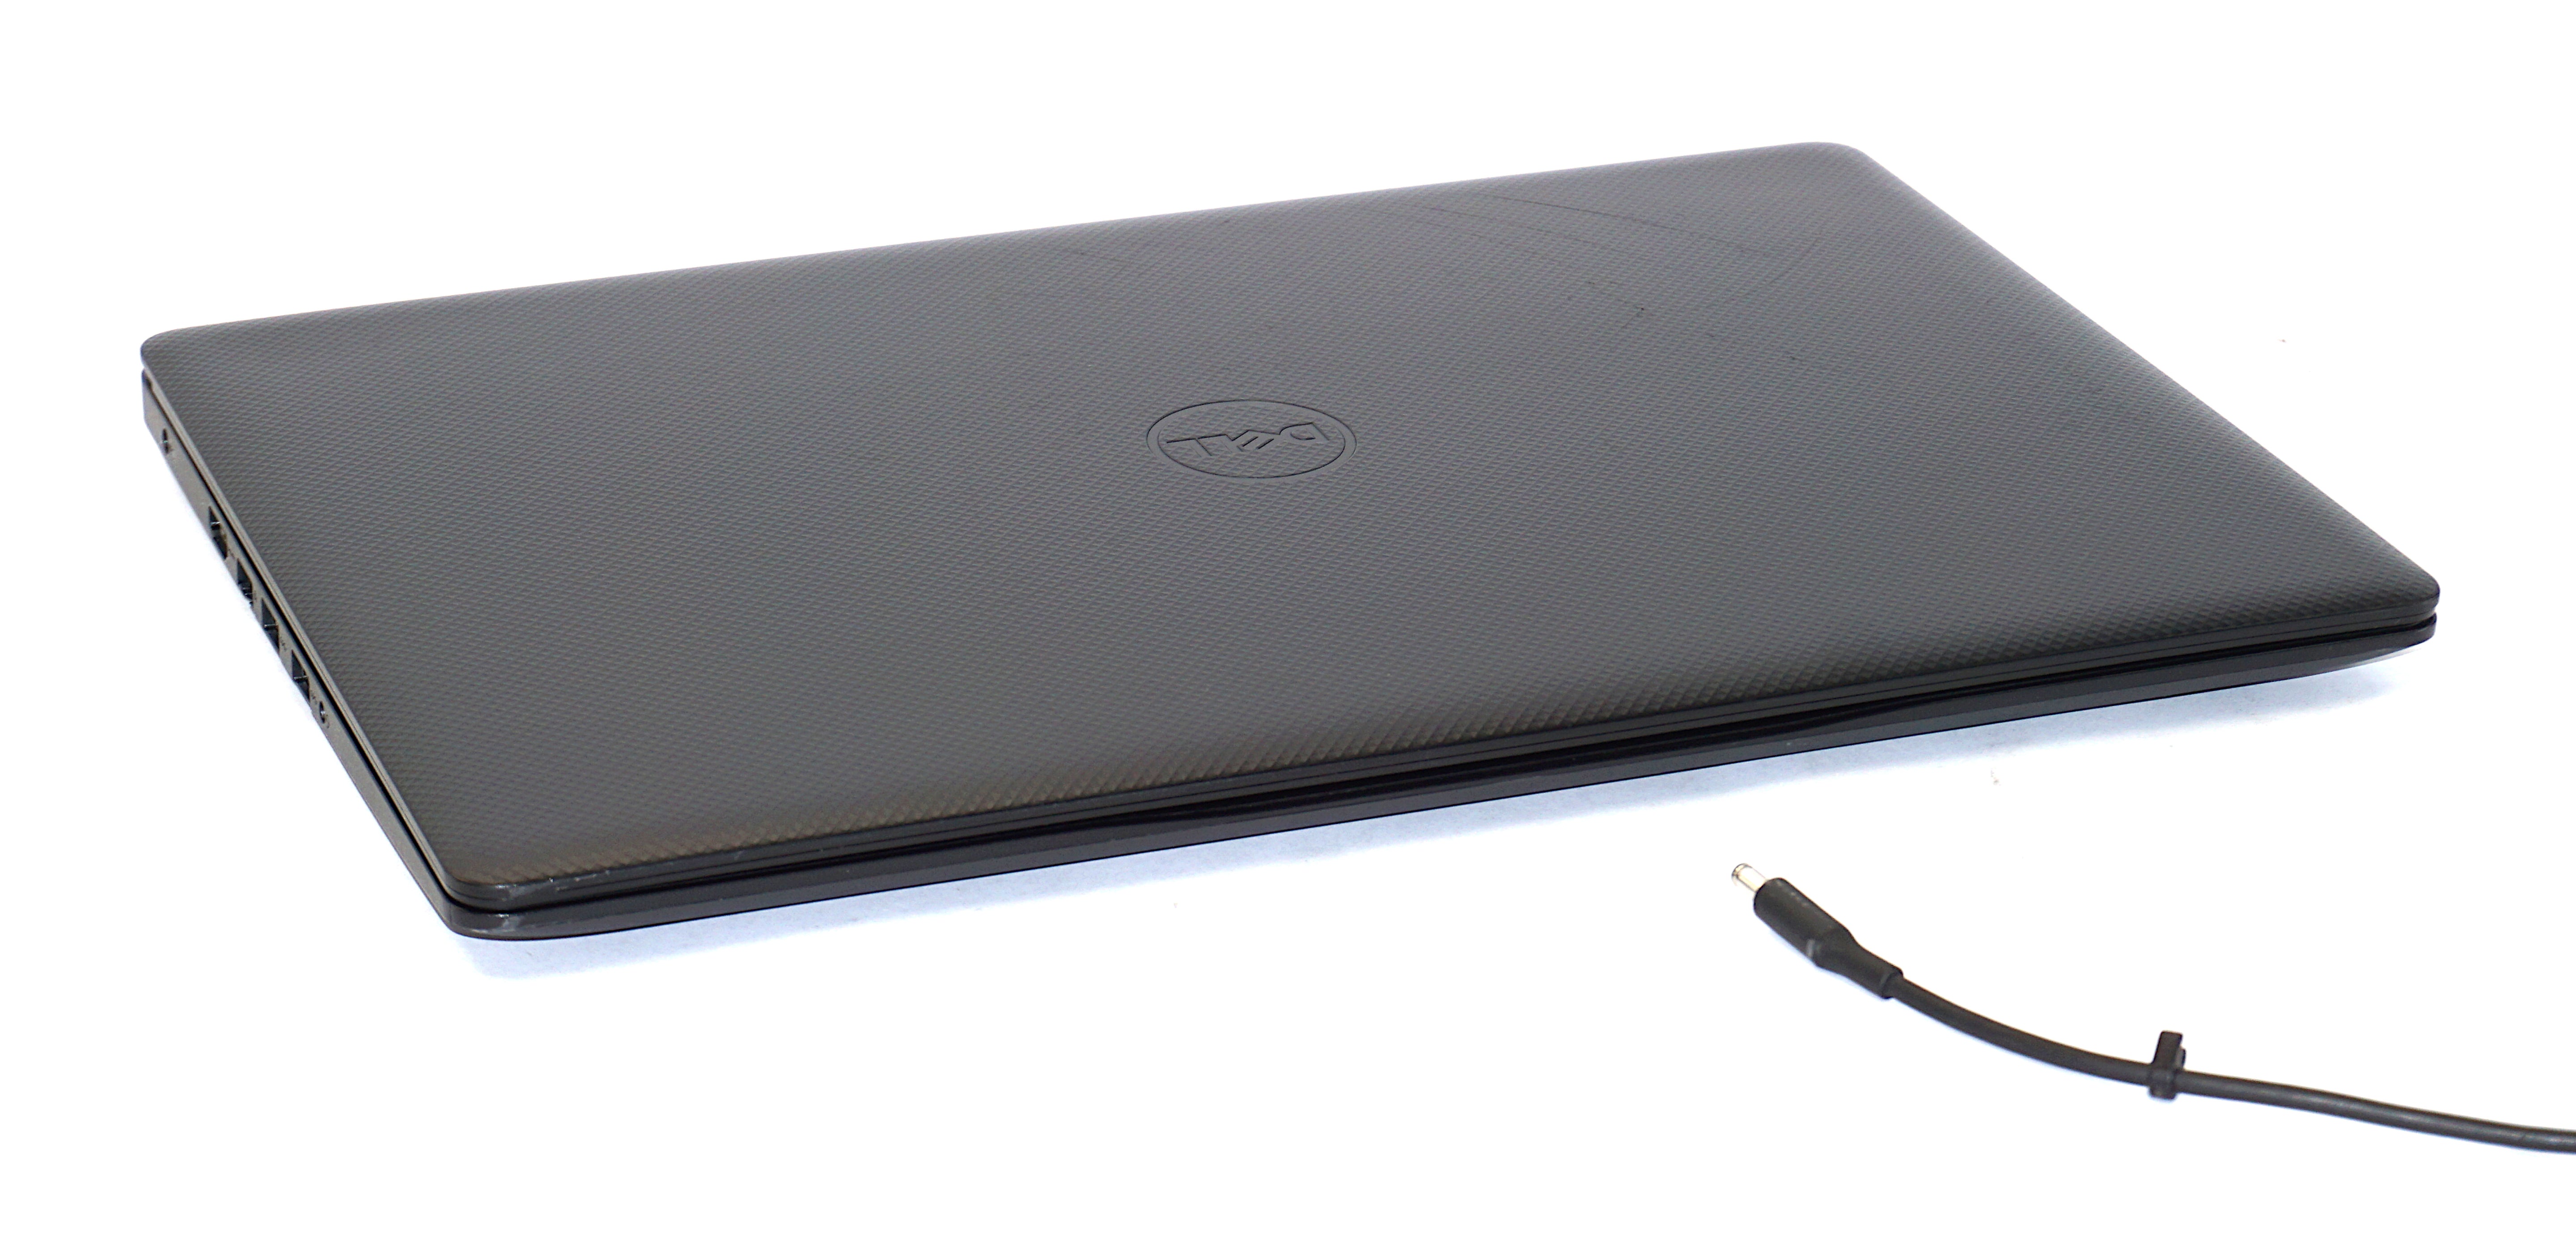 Dell Vostro 3580 Laptop, 15.5" Core i3 8th Gen, 8GB RAM, 256GB SSD